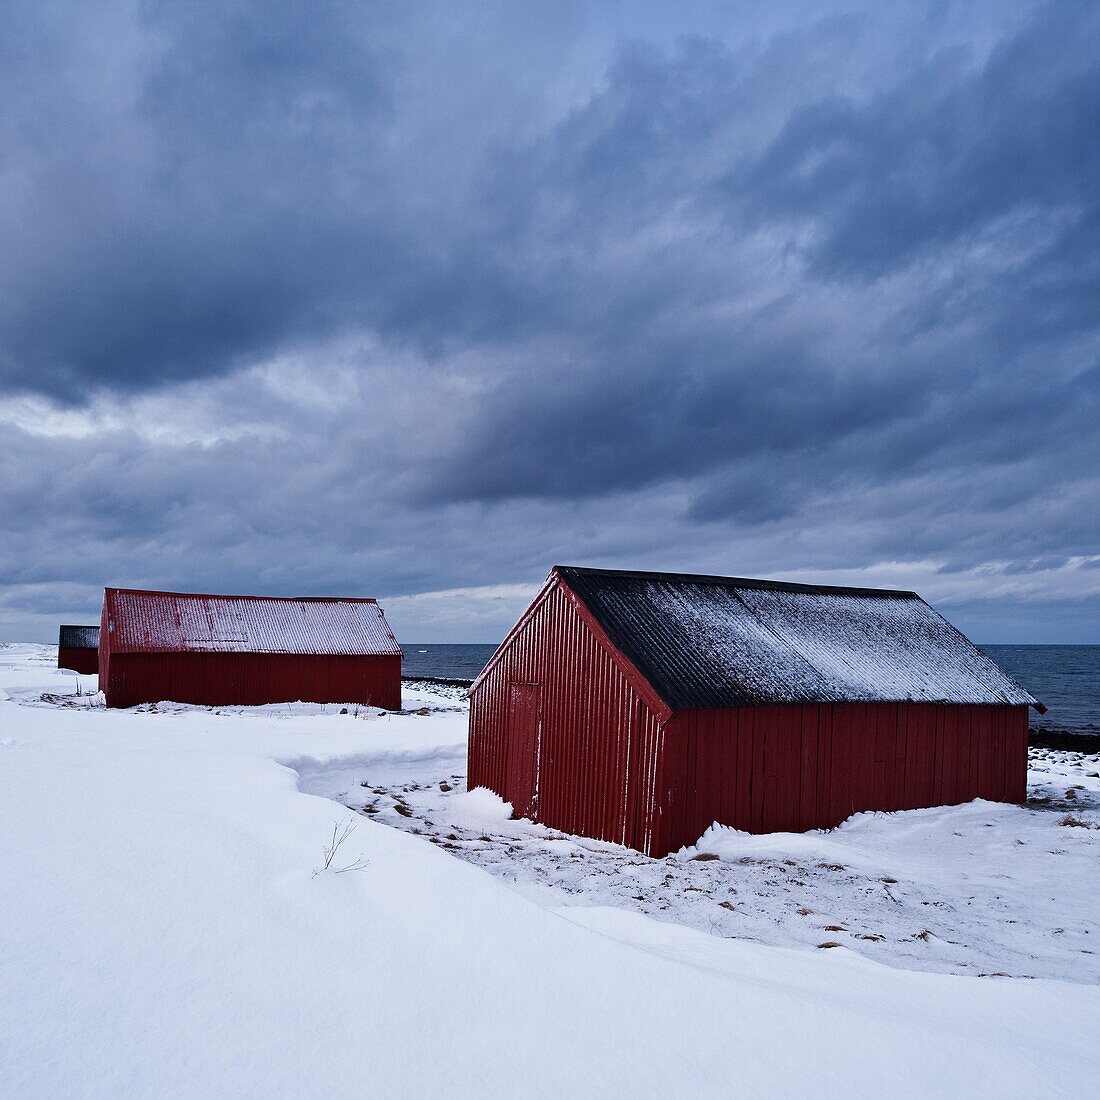 Boat sheds in snow, Eggum, Vestvågøy, Lofoten islands, Norway